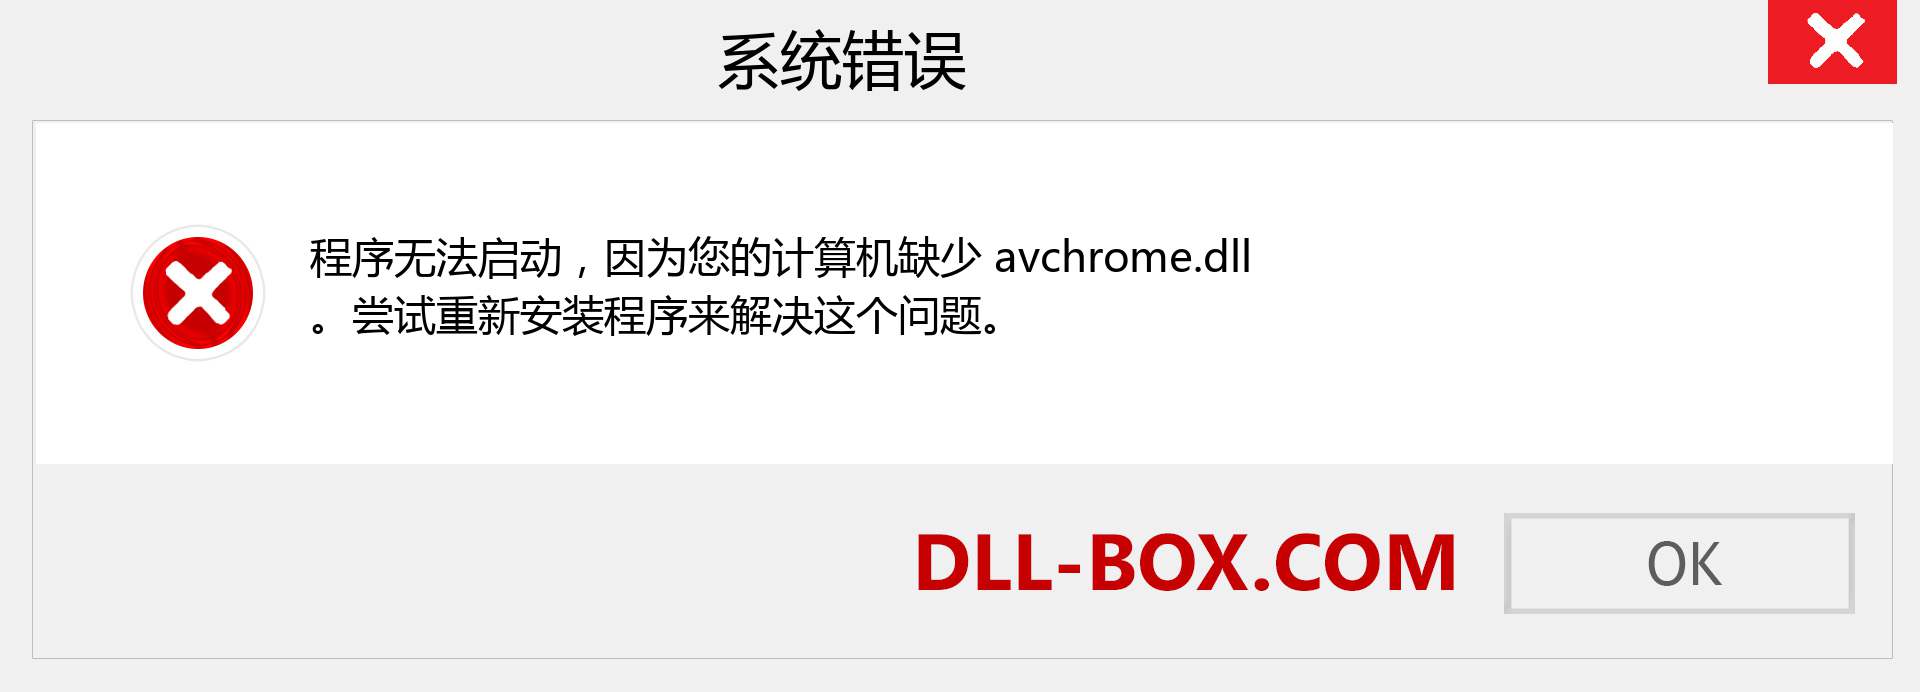 avchrome.dll 文件丢失？。 适用于 Windows 7、8、10 的下载 - 修复 Windows、照片、图像上的 avchrome dll 丢失错误